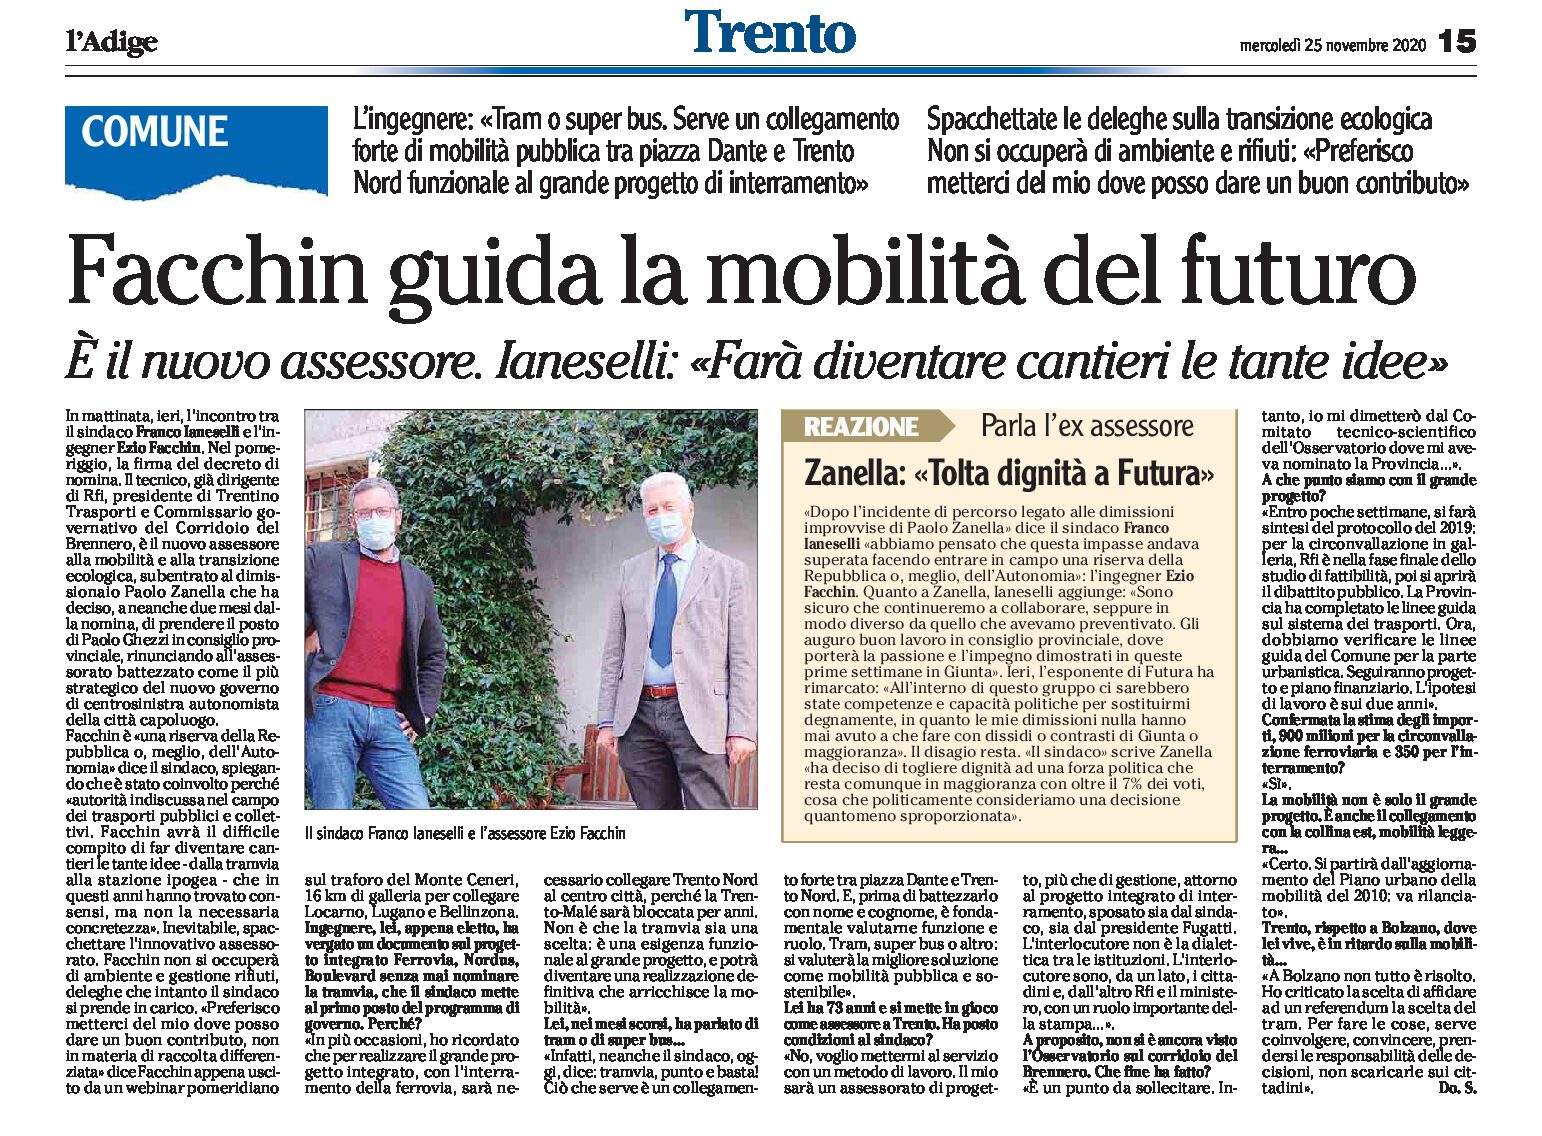 Trento: Facchin (nuovo assessore comunale al posto di Zanella) guida la mobilità del futuro